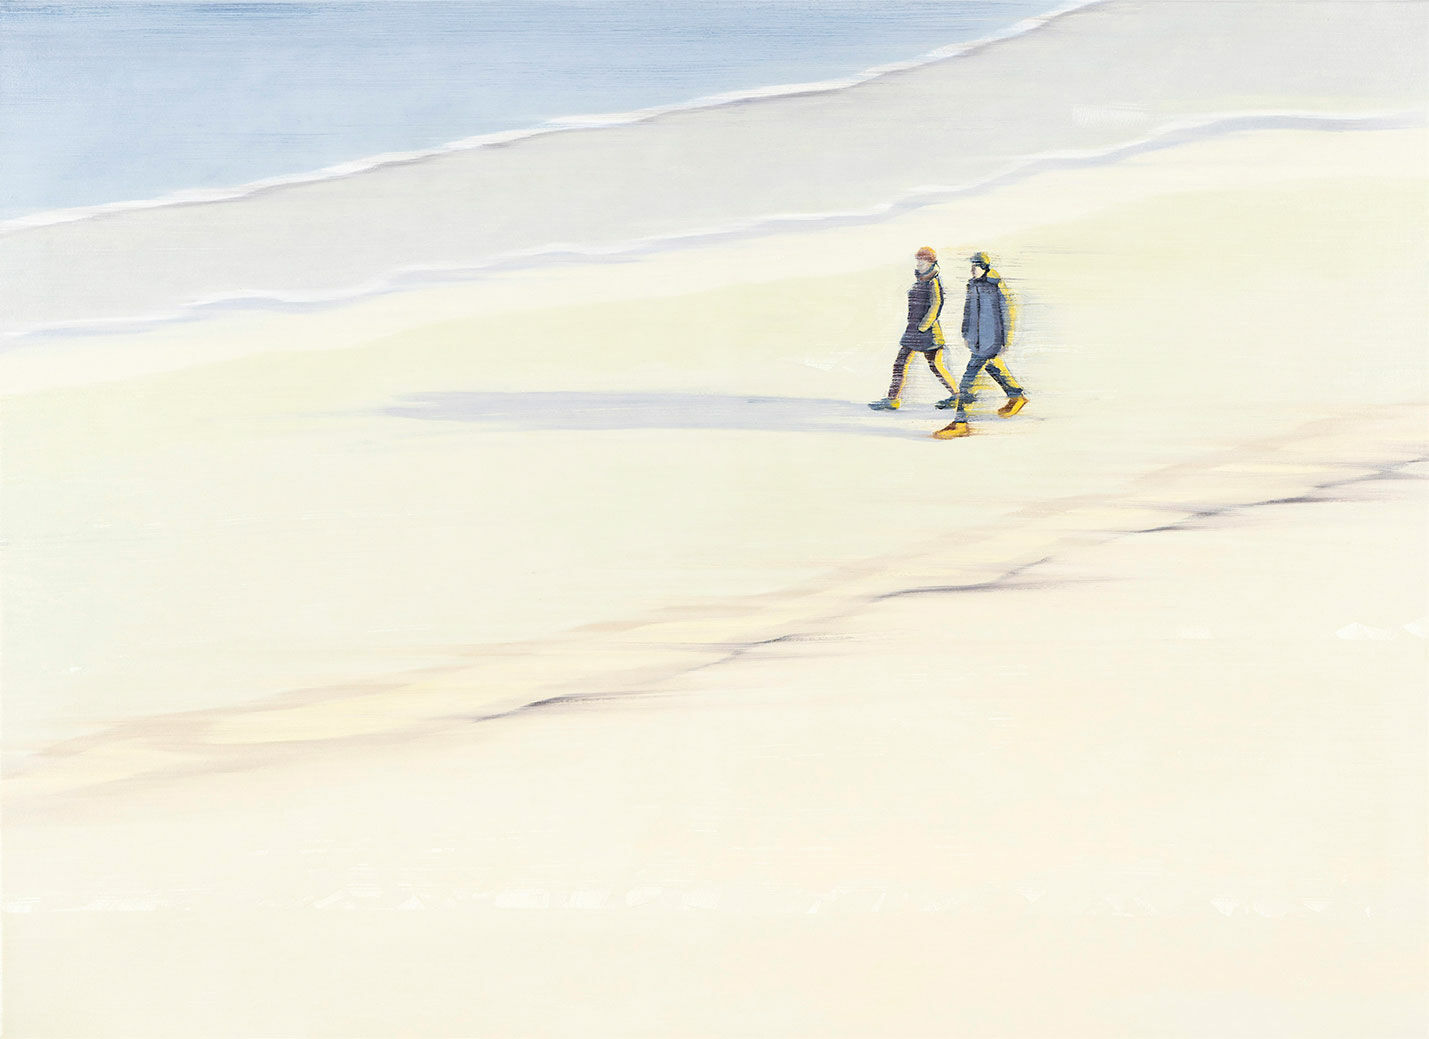 Billede "A Day at the Beach" (2022) (Original / Unikt værk), på båreramme von Anja Struck